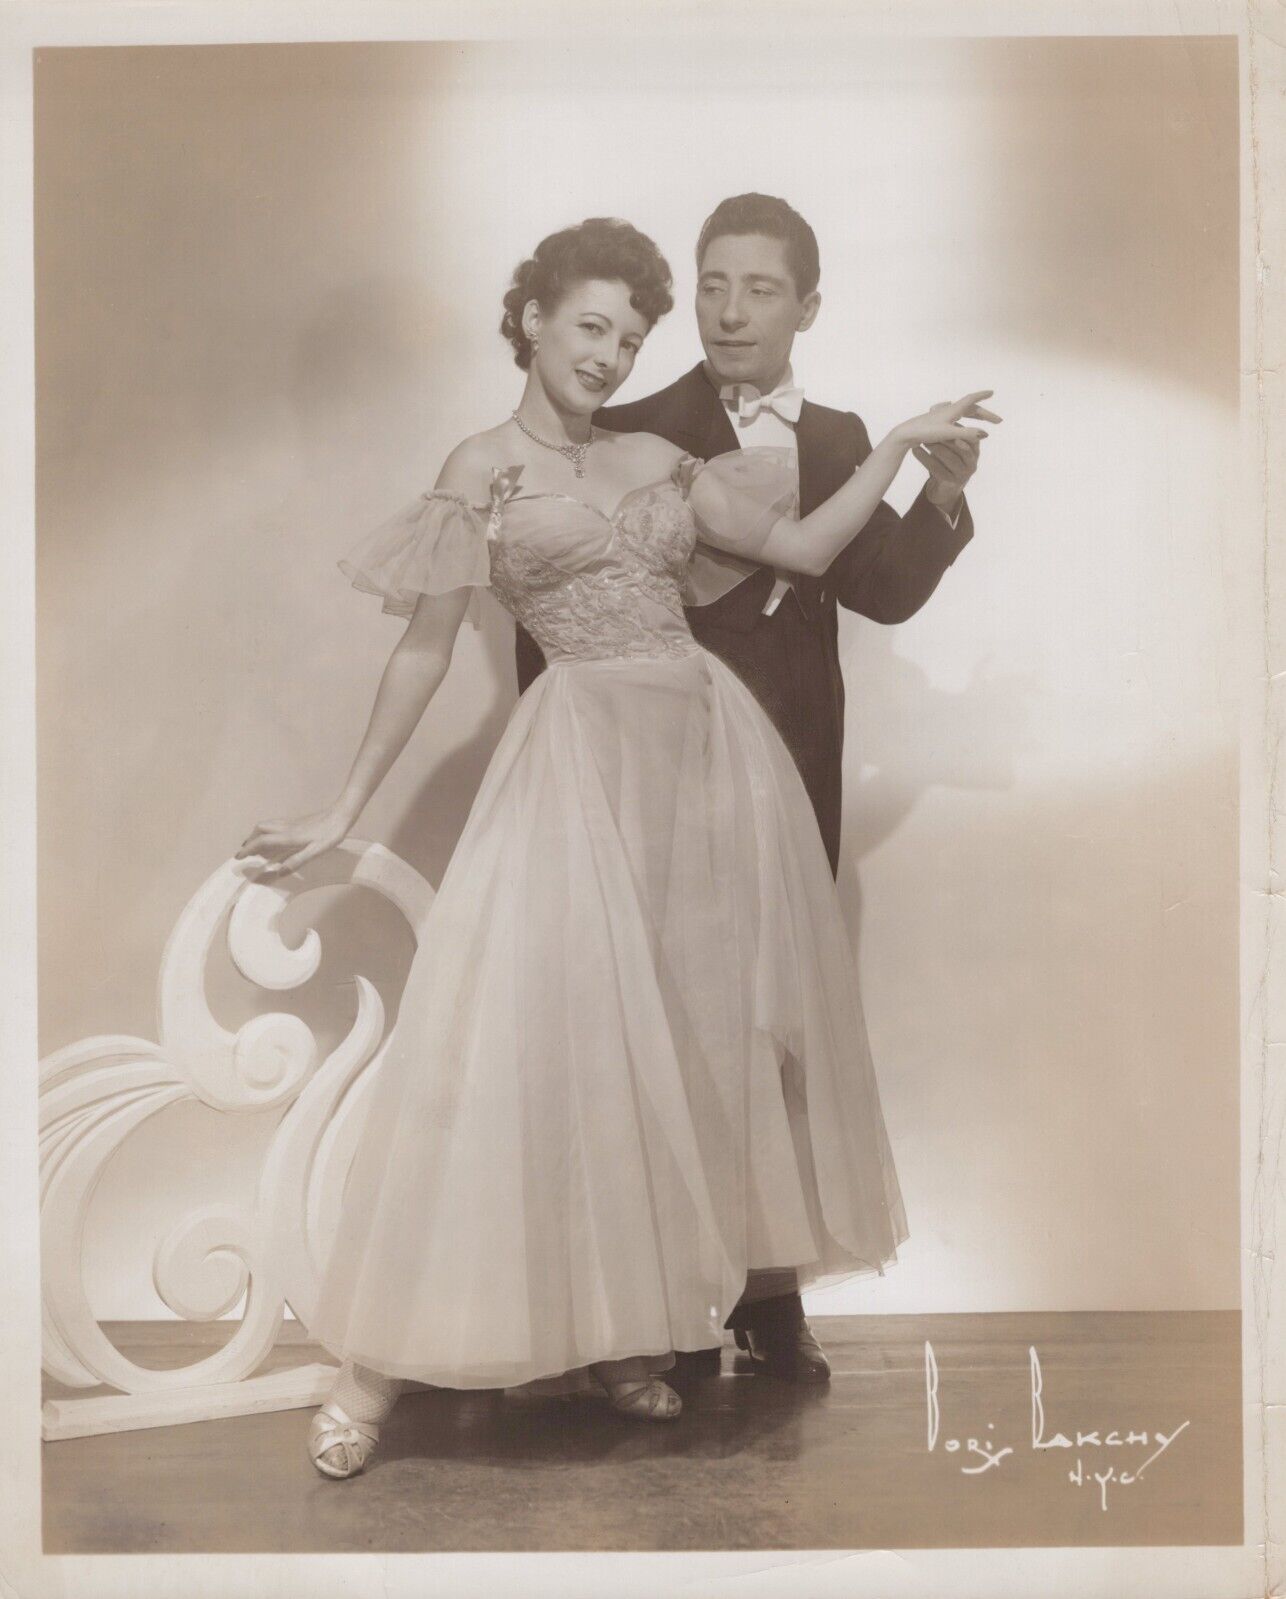 Ted + c- American Smartest Dancers (1940s) ❤ Original Vintage Photo K 389